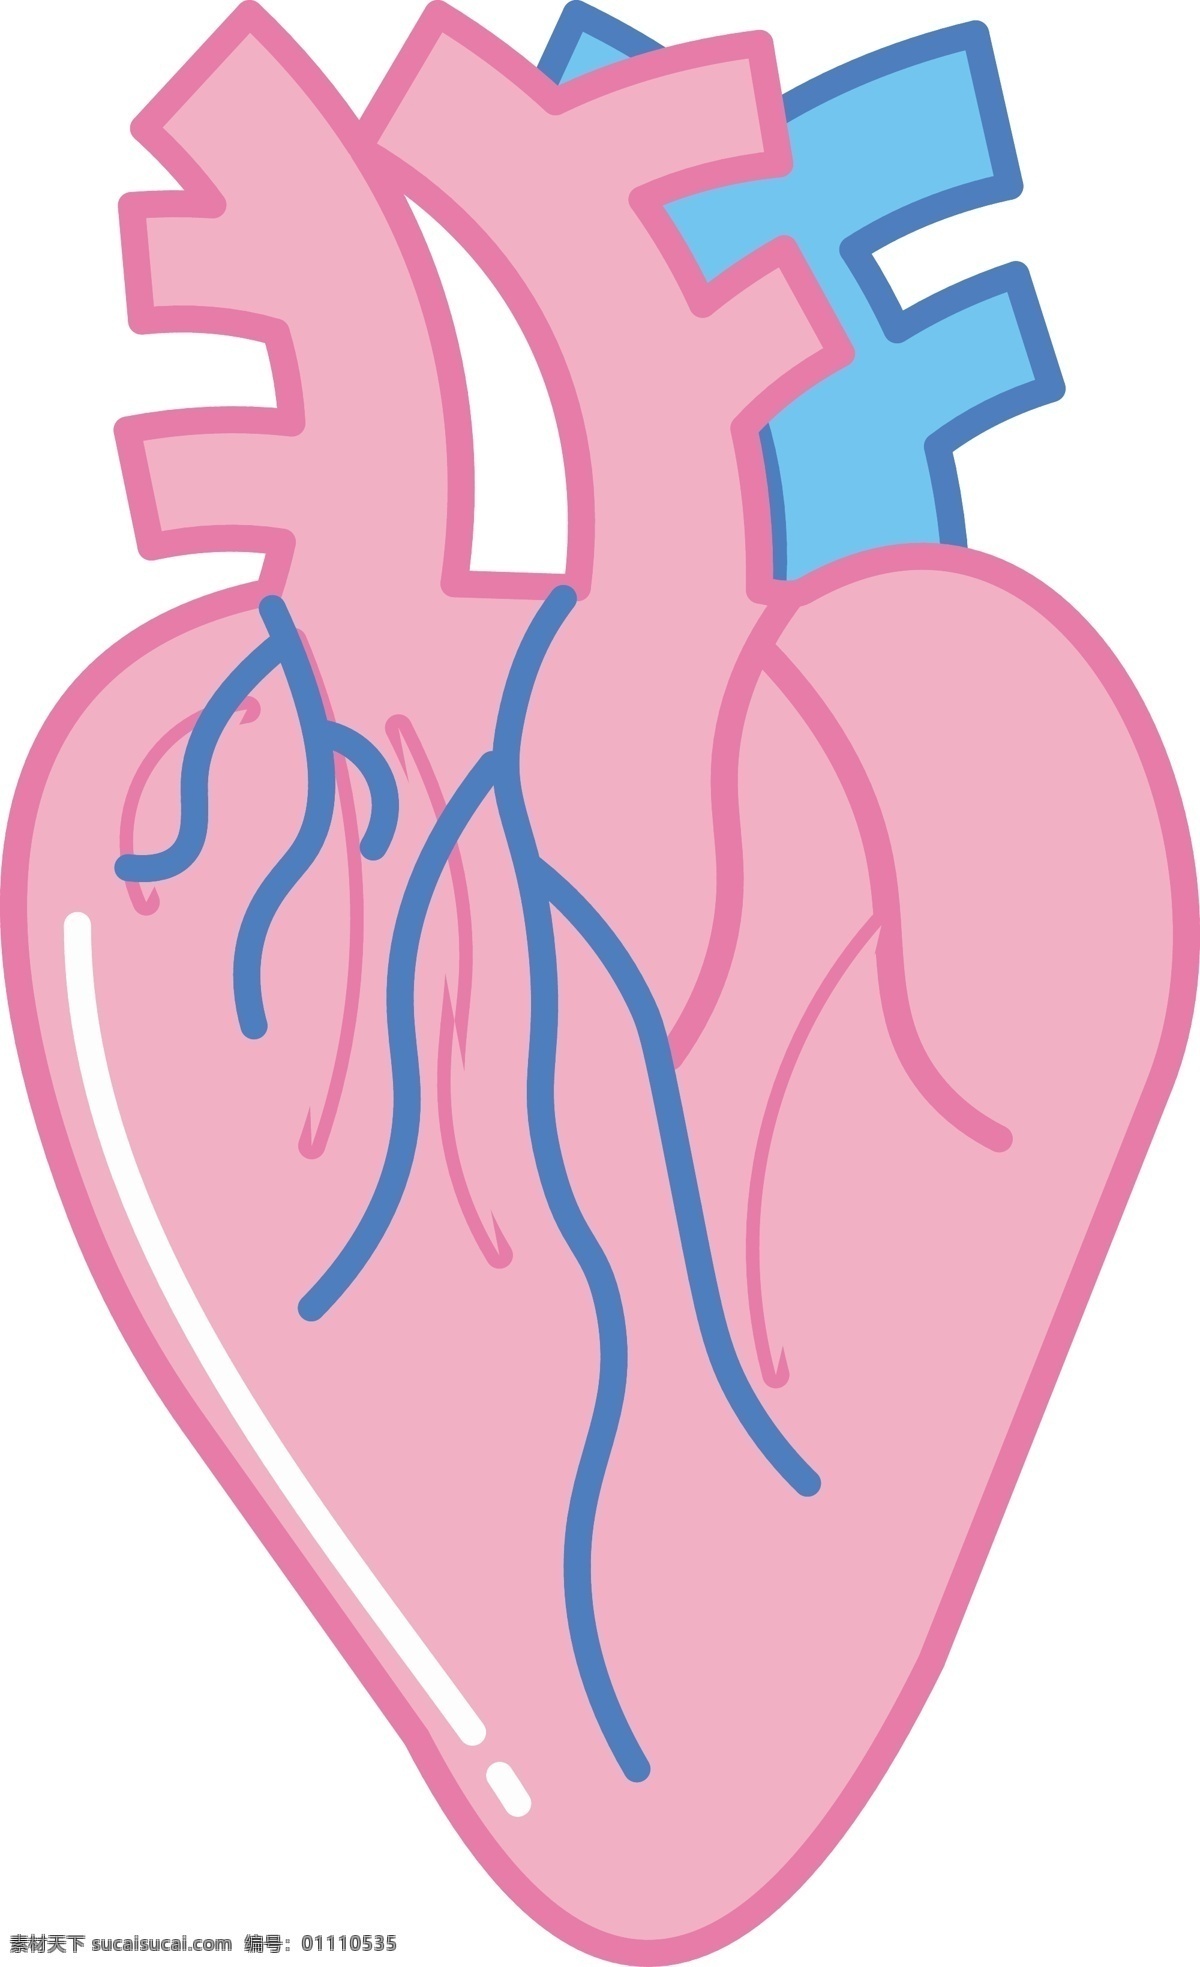 人体 器官 心脏 插画 人体器官插画 卡通插画 内脏插画 人体器官 器官插画 心脏插画 粉色的心脏